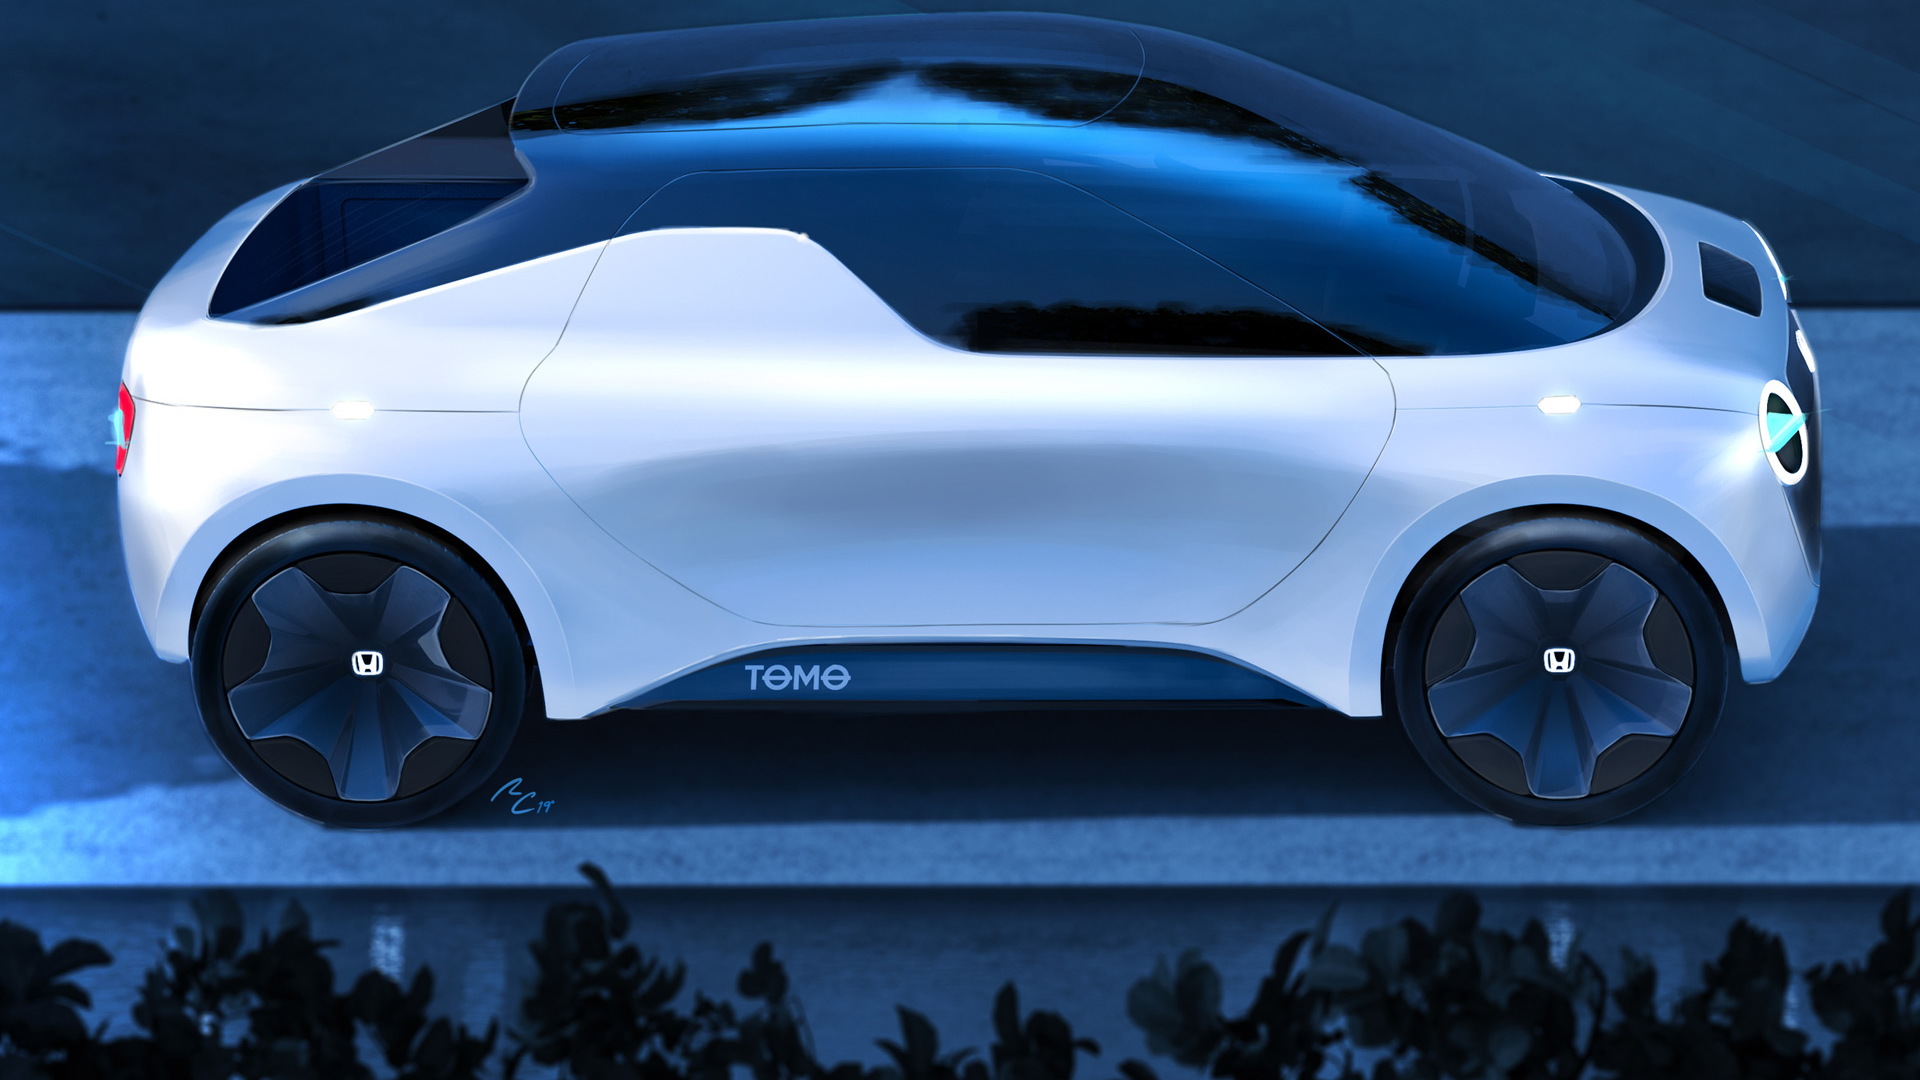 Teaser for Honda Tomo concept debuting at 2019 Geneva auto show